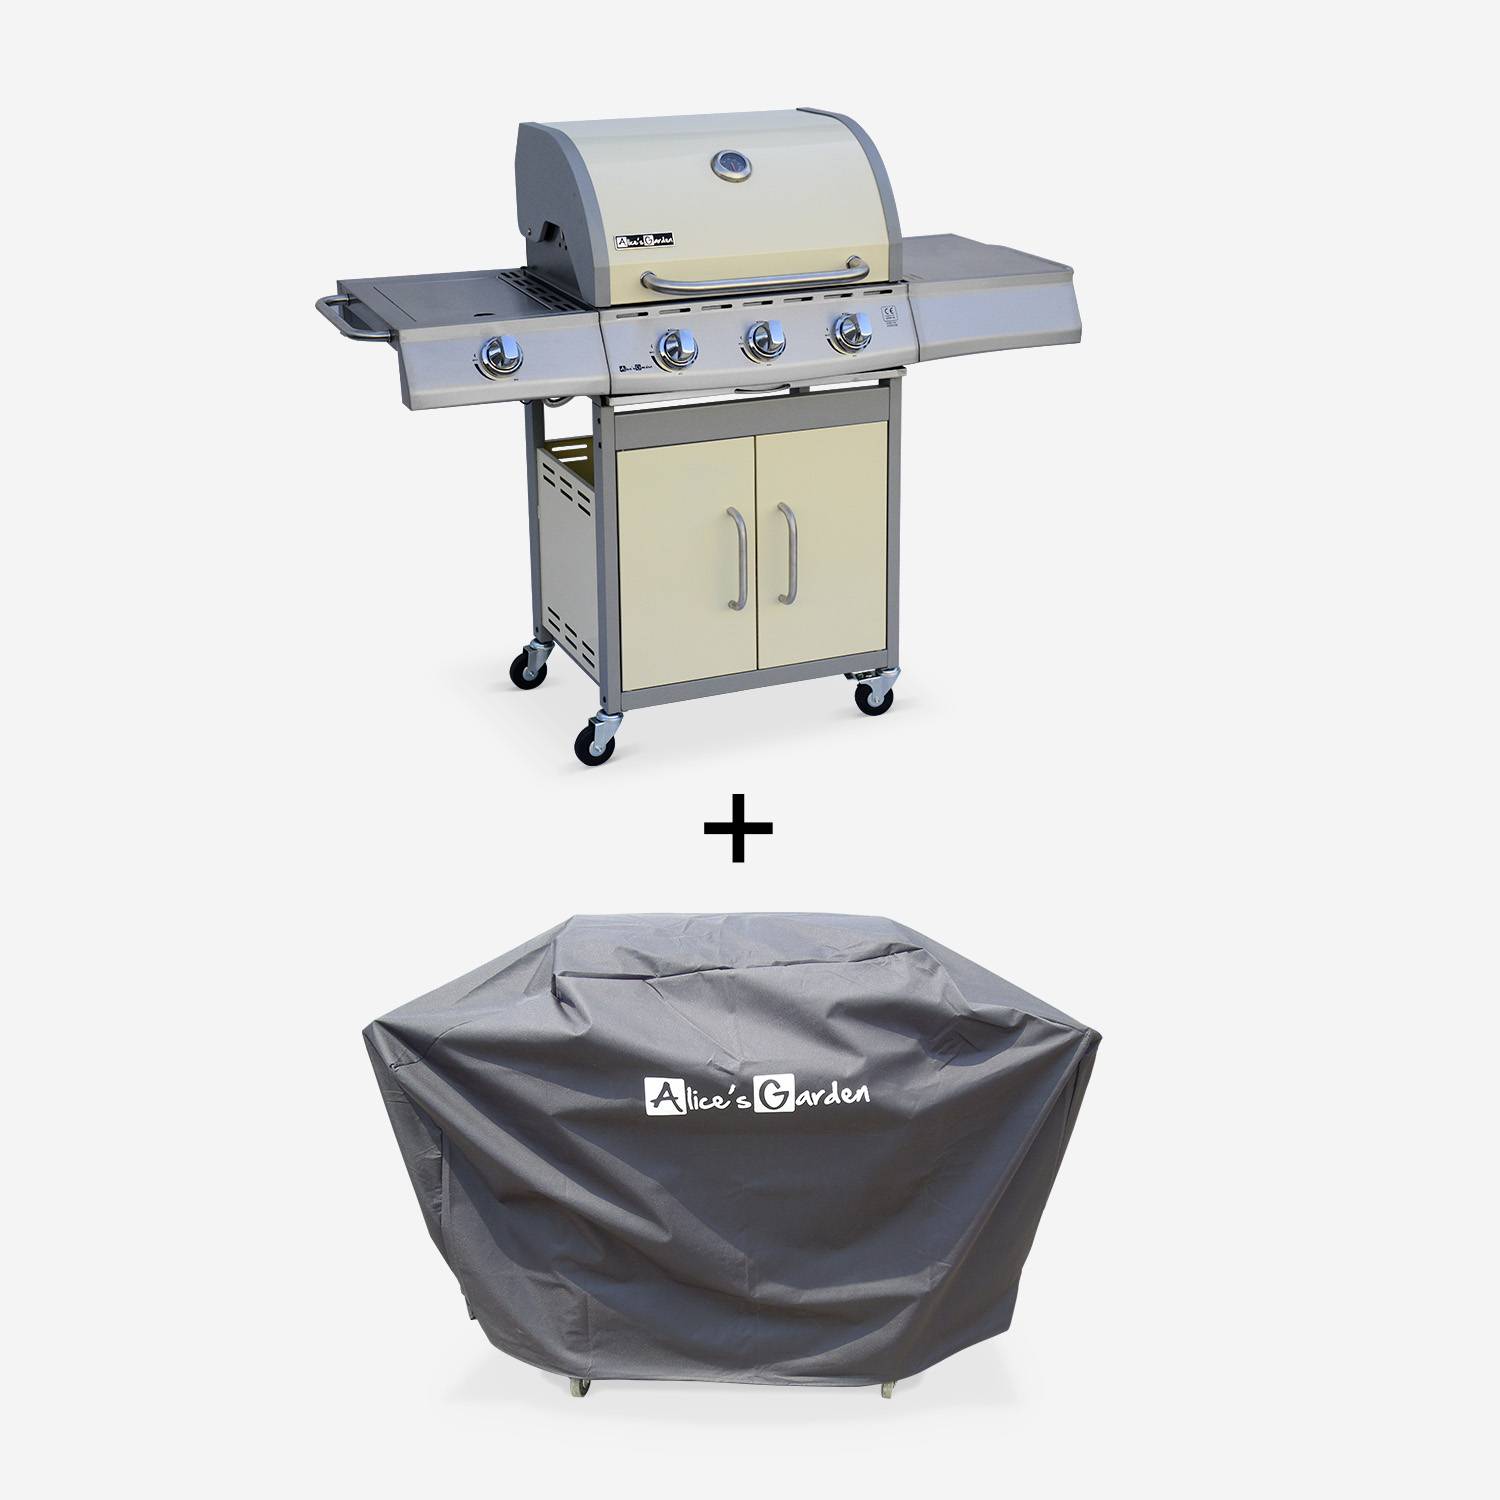 Barbecue gaz inox 14kW – Richelieu ivoire – Barbecue 4 brûleurs dont 1 feu latéral, côté grill et côté plancha, housse de protection incluse Photo1